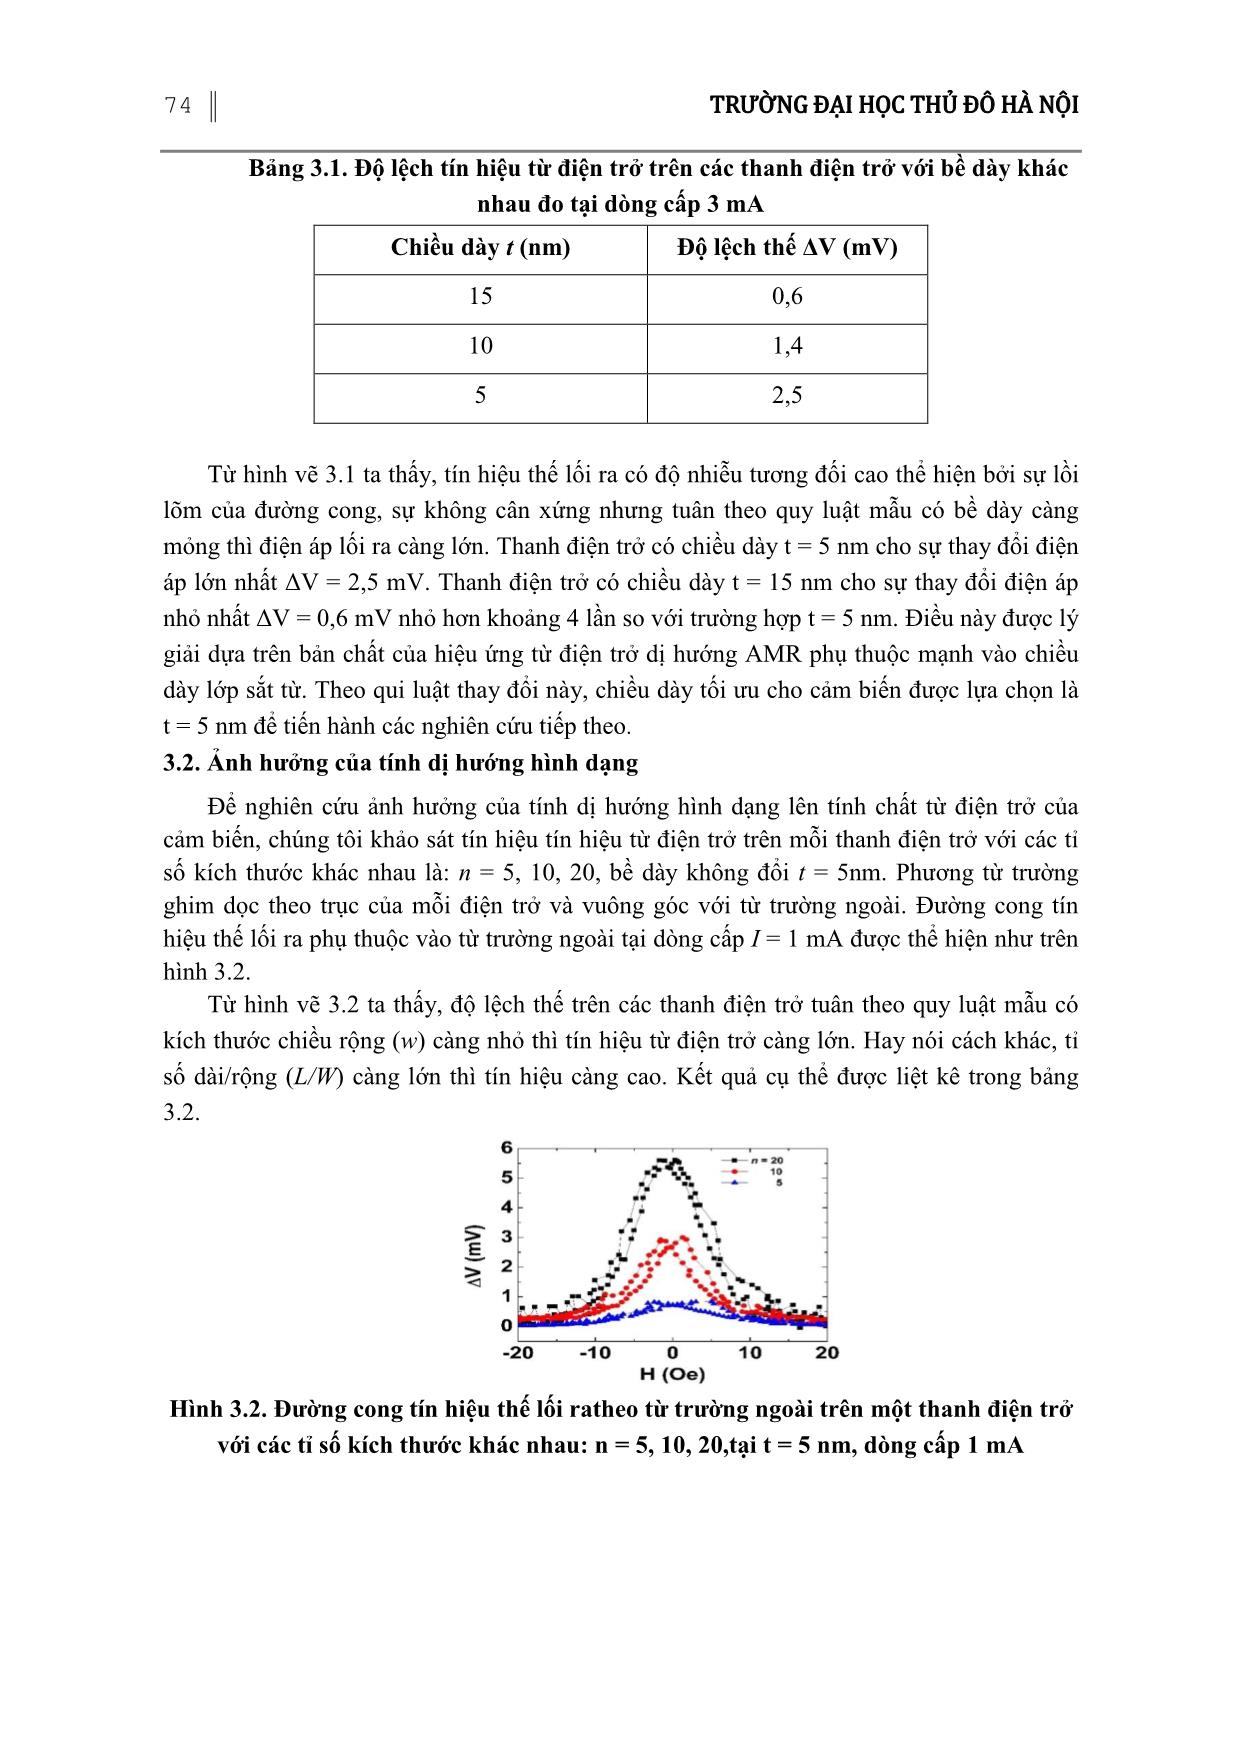 Cảm biến đo từ trường thấp dựa trên hiệu ứng từ điện trở dị hướng trang 4